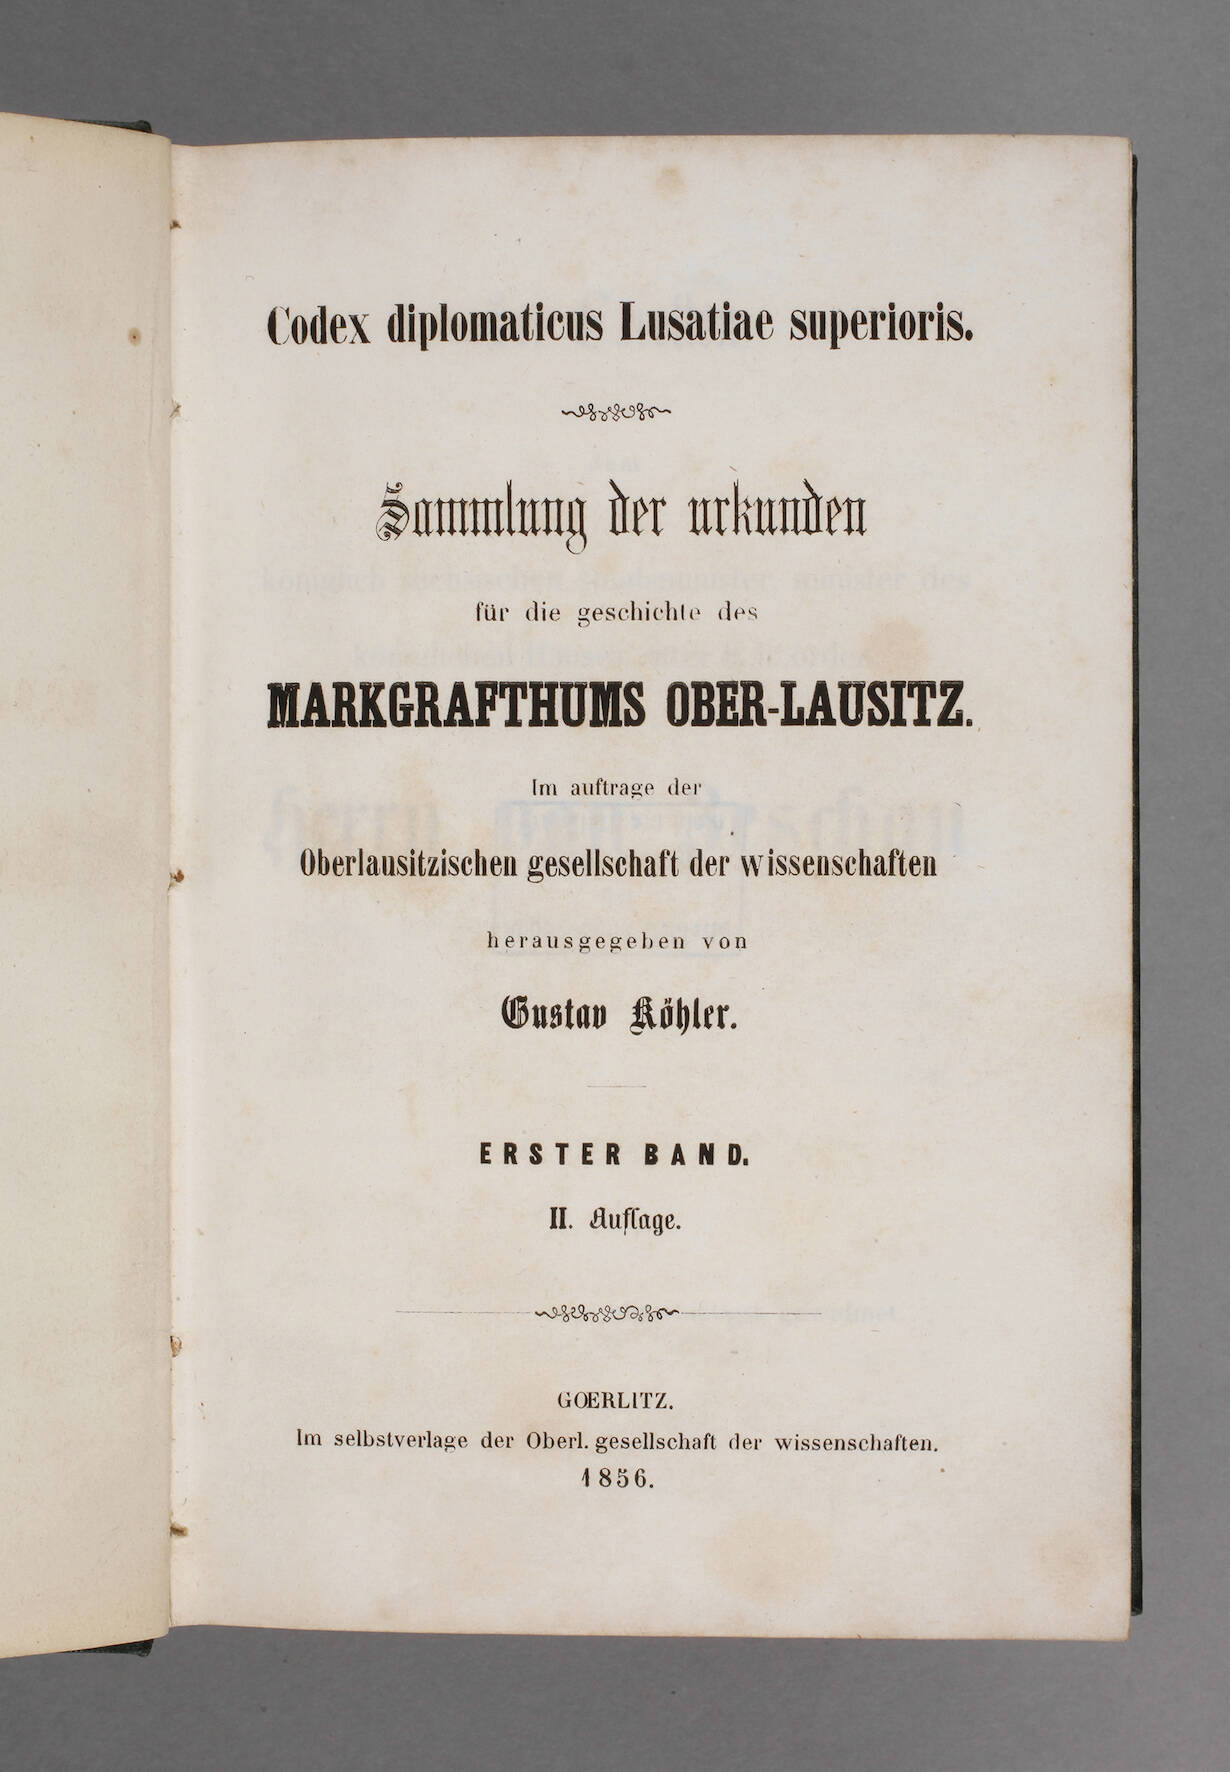 Codex diplomaticus Lusatiae superioris